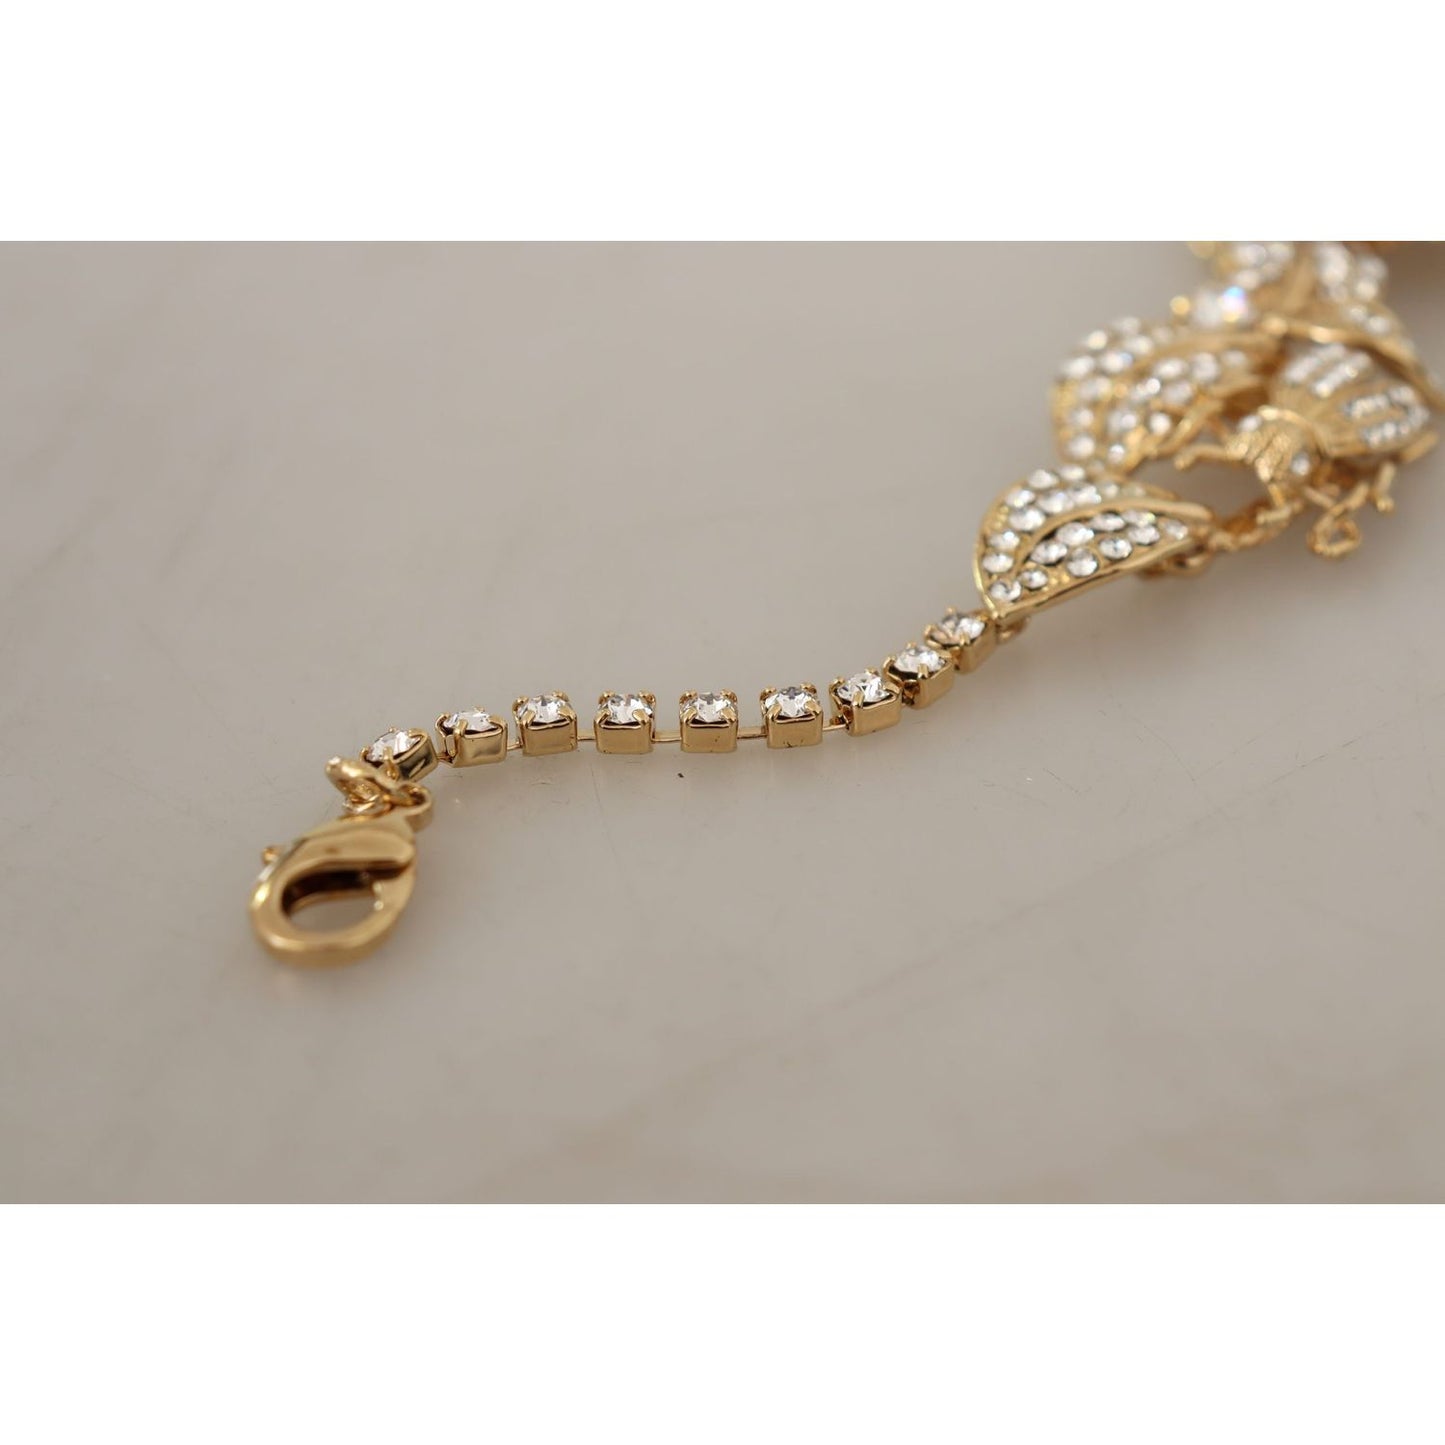 Dolce & Gabbana Elegant Sicily Floral Bug Statement Necklace gold-brass-floral-sicily-crystal-statement-necklace WOMAN NECKLACE IMG_1874-scaled-1219fb14-bf1.jpg